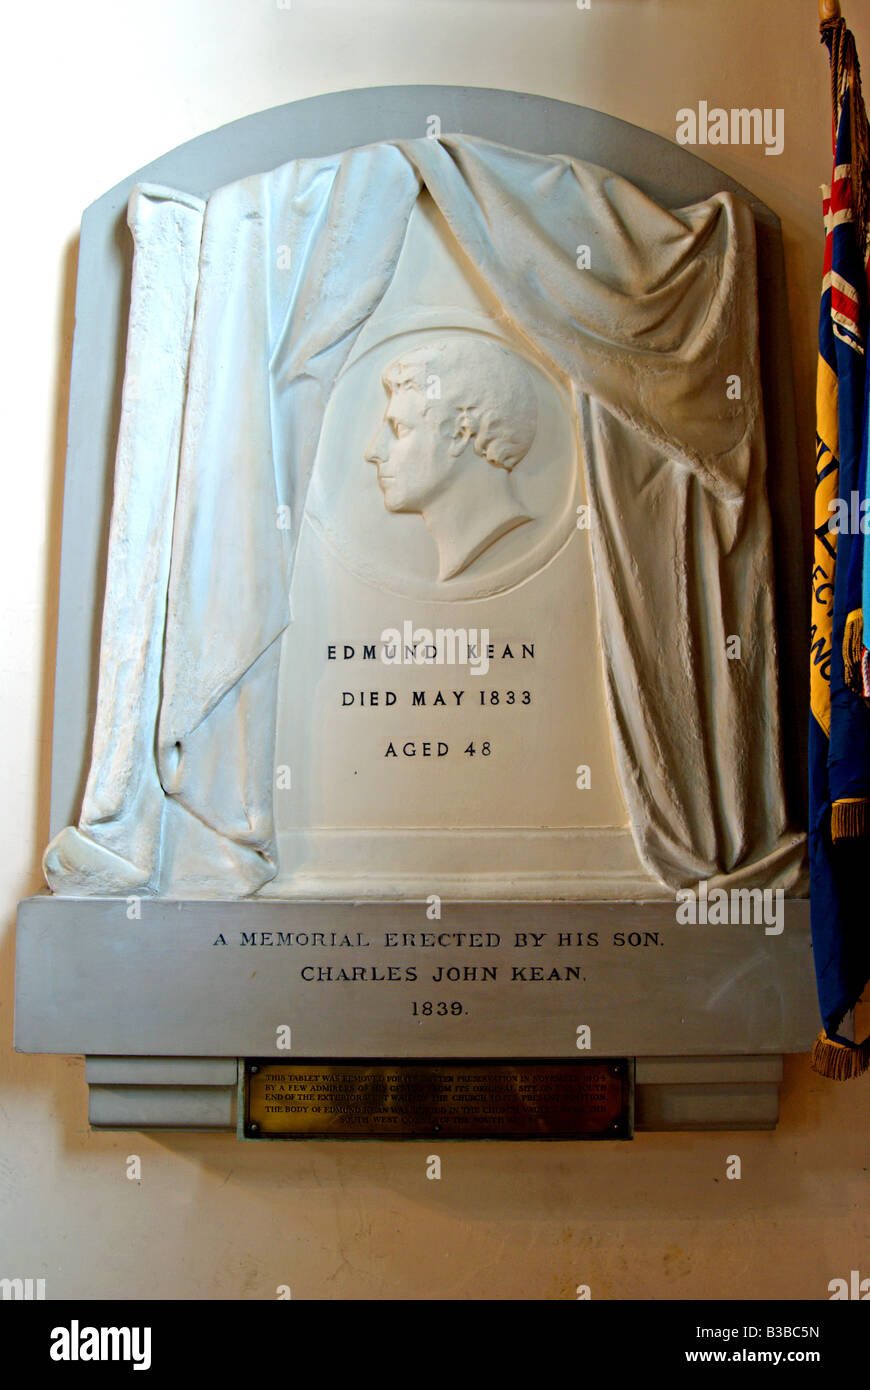 Memorial à acteur Edmund Kean dans l'église de Sainte Marie Madeleine, Richmond upon Thames, Surrey, Angleterre Banque D'Images